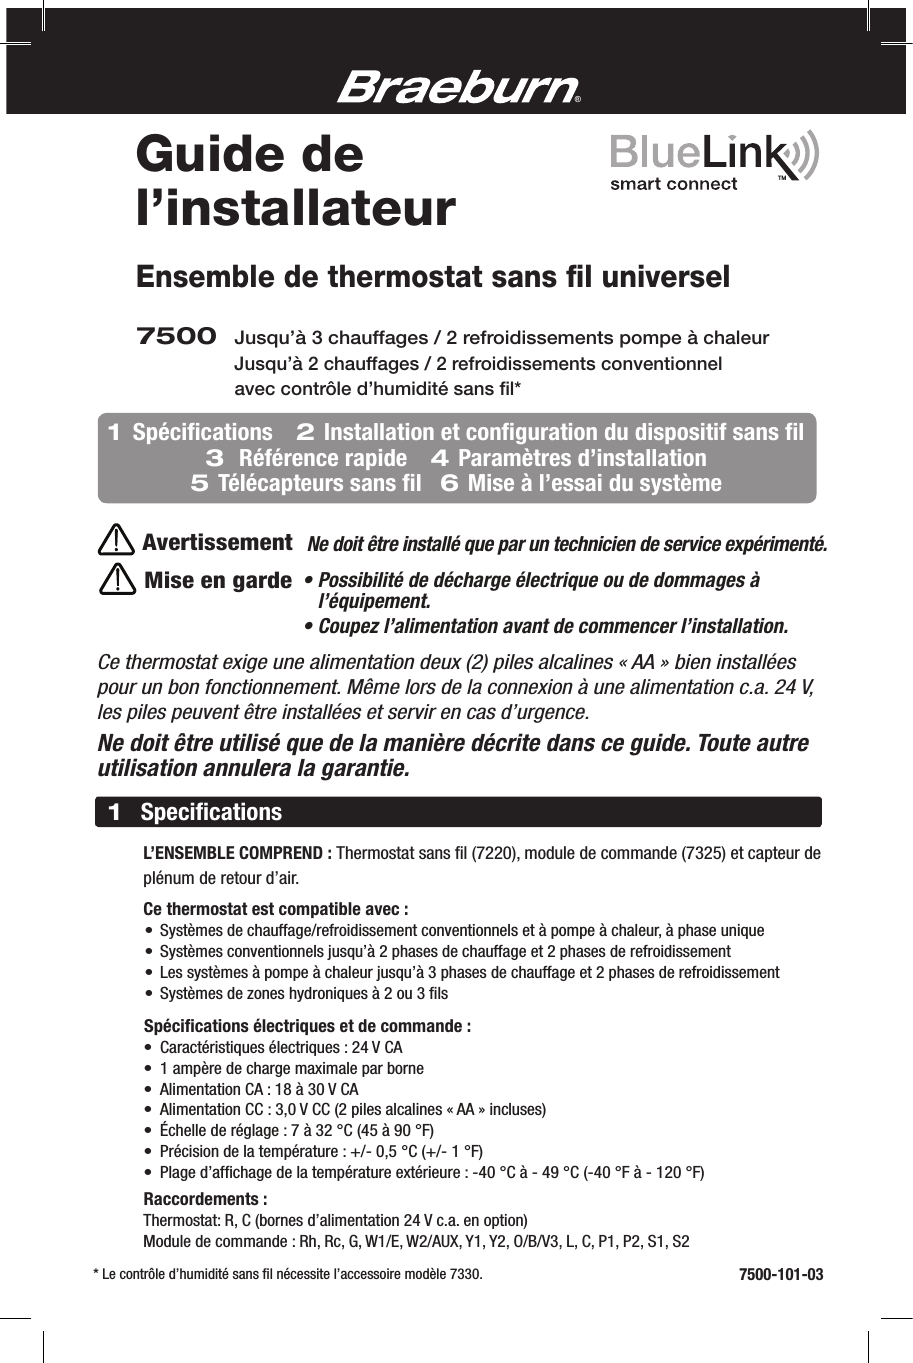 Ensemble de thermostat sans ﬁl universelMise en gardeCe thermostat exige une alimentation deux (2) piles alcalines « AA » bien installées pour un bon fonctionnement. Même lors de la connexion à une alimentation c.a. 24 V, les piles peuvent être installées et servir en cas d’urgence.Ne doit être utilisé que de la manière décrite dans ce guide. Toute autre utilisation annulera la garantie.7500 Jusqu’à 3chauffages / 2refroidissements pompe à chaleur       Jusqu’à 2chauffages / 2refroidissements conventionnel avec contrôle d’humidité sans ﬁl*AvertissementNe doit être installé que par un technicien de service expérimenté.®      L’ENSEMBLE COMPREND : Thermostat sans ﬁl (7220), module de commande (7325) et capteur de      plénum de retour d’air.   Ce thermostat est compatible avec:  • Systèmes de chauffage/refroidissement conventionnels et à pompe à chaleur, à phase unique  • Systèmes conventionnels jusqu’à 2 phases de chauffage et 2 phases de refroidissement  • Les systèmes à pompe à chaleur jusqu’à 3 phases de chauffage et 2 phases de refroidissement  • Systèmes de zones hydroniques à 2 ou 3ﬁls    Spéciﬁcations électriques et de commande :  • Caractéristiques électriques : 24 V CA  • 1 ampère de charge maximale par borne  • Alimentation CA : 18 à 30 V CA  • Alimentation CC : 3,0 V CC (2 piles alcalines « AA » incluses)  • Échelle de réglage : 7 à 32 °C (45 à 90 °F)  • Précision de la température : +/- 0,5 °C (+/- 1 °F)  • Plage d’afﬁchage de la température extérieure : -40 °C à - 49 °C (-40 °F à - 120 °F)   Raccordements :    Thermostat: R, C (bornes d’alimentation 24 V c.a. en option)   Module de commande : Rh, Rc, G, W1/E, W2/AUX, Y1, Y2, O/B/V3, L, C, P1, P2, S1, S21Speciﬁcations7500-101-03Guide de l’installateurTM  * Le contrôle d’humidité sans ﬁl nécessite l’accessoire modèle 7330.1  Spéciﬁcations    2 Installation et conﬁguration du dispositif sans ﬁl   3  Référence rapide    4 Paramètres d’installation   5 Télécapteurs sans ﬁl   6 Mise à l’essai du système•  Possibilité de décharge électrique ou de dommages à l’équipement.• Coupez l’alimentation avant de commencer l’installation.